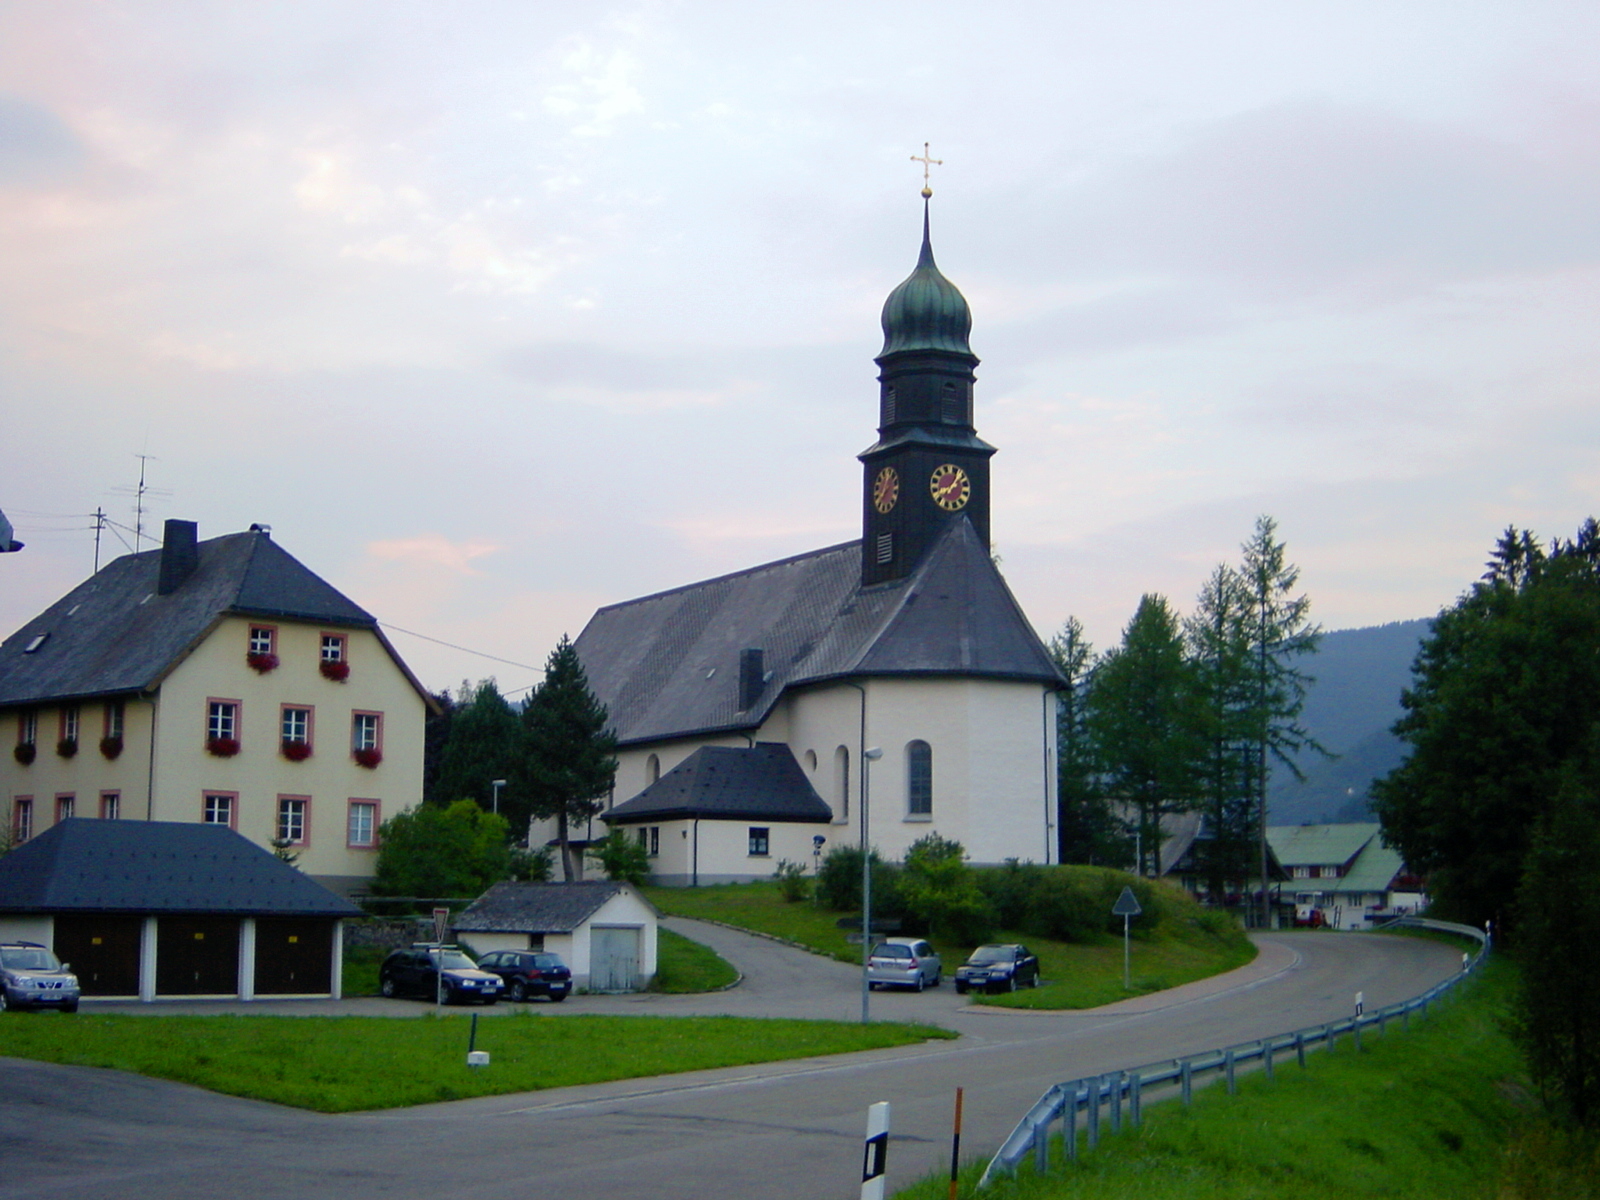 a church in a town near the water